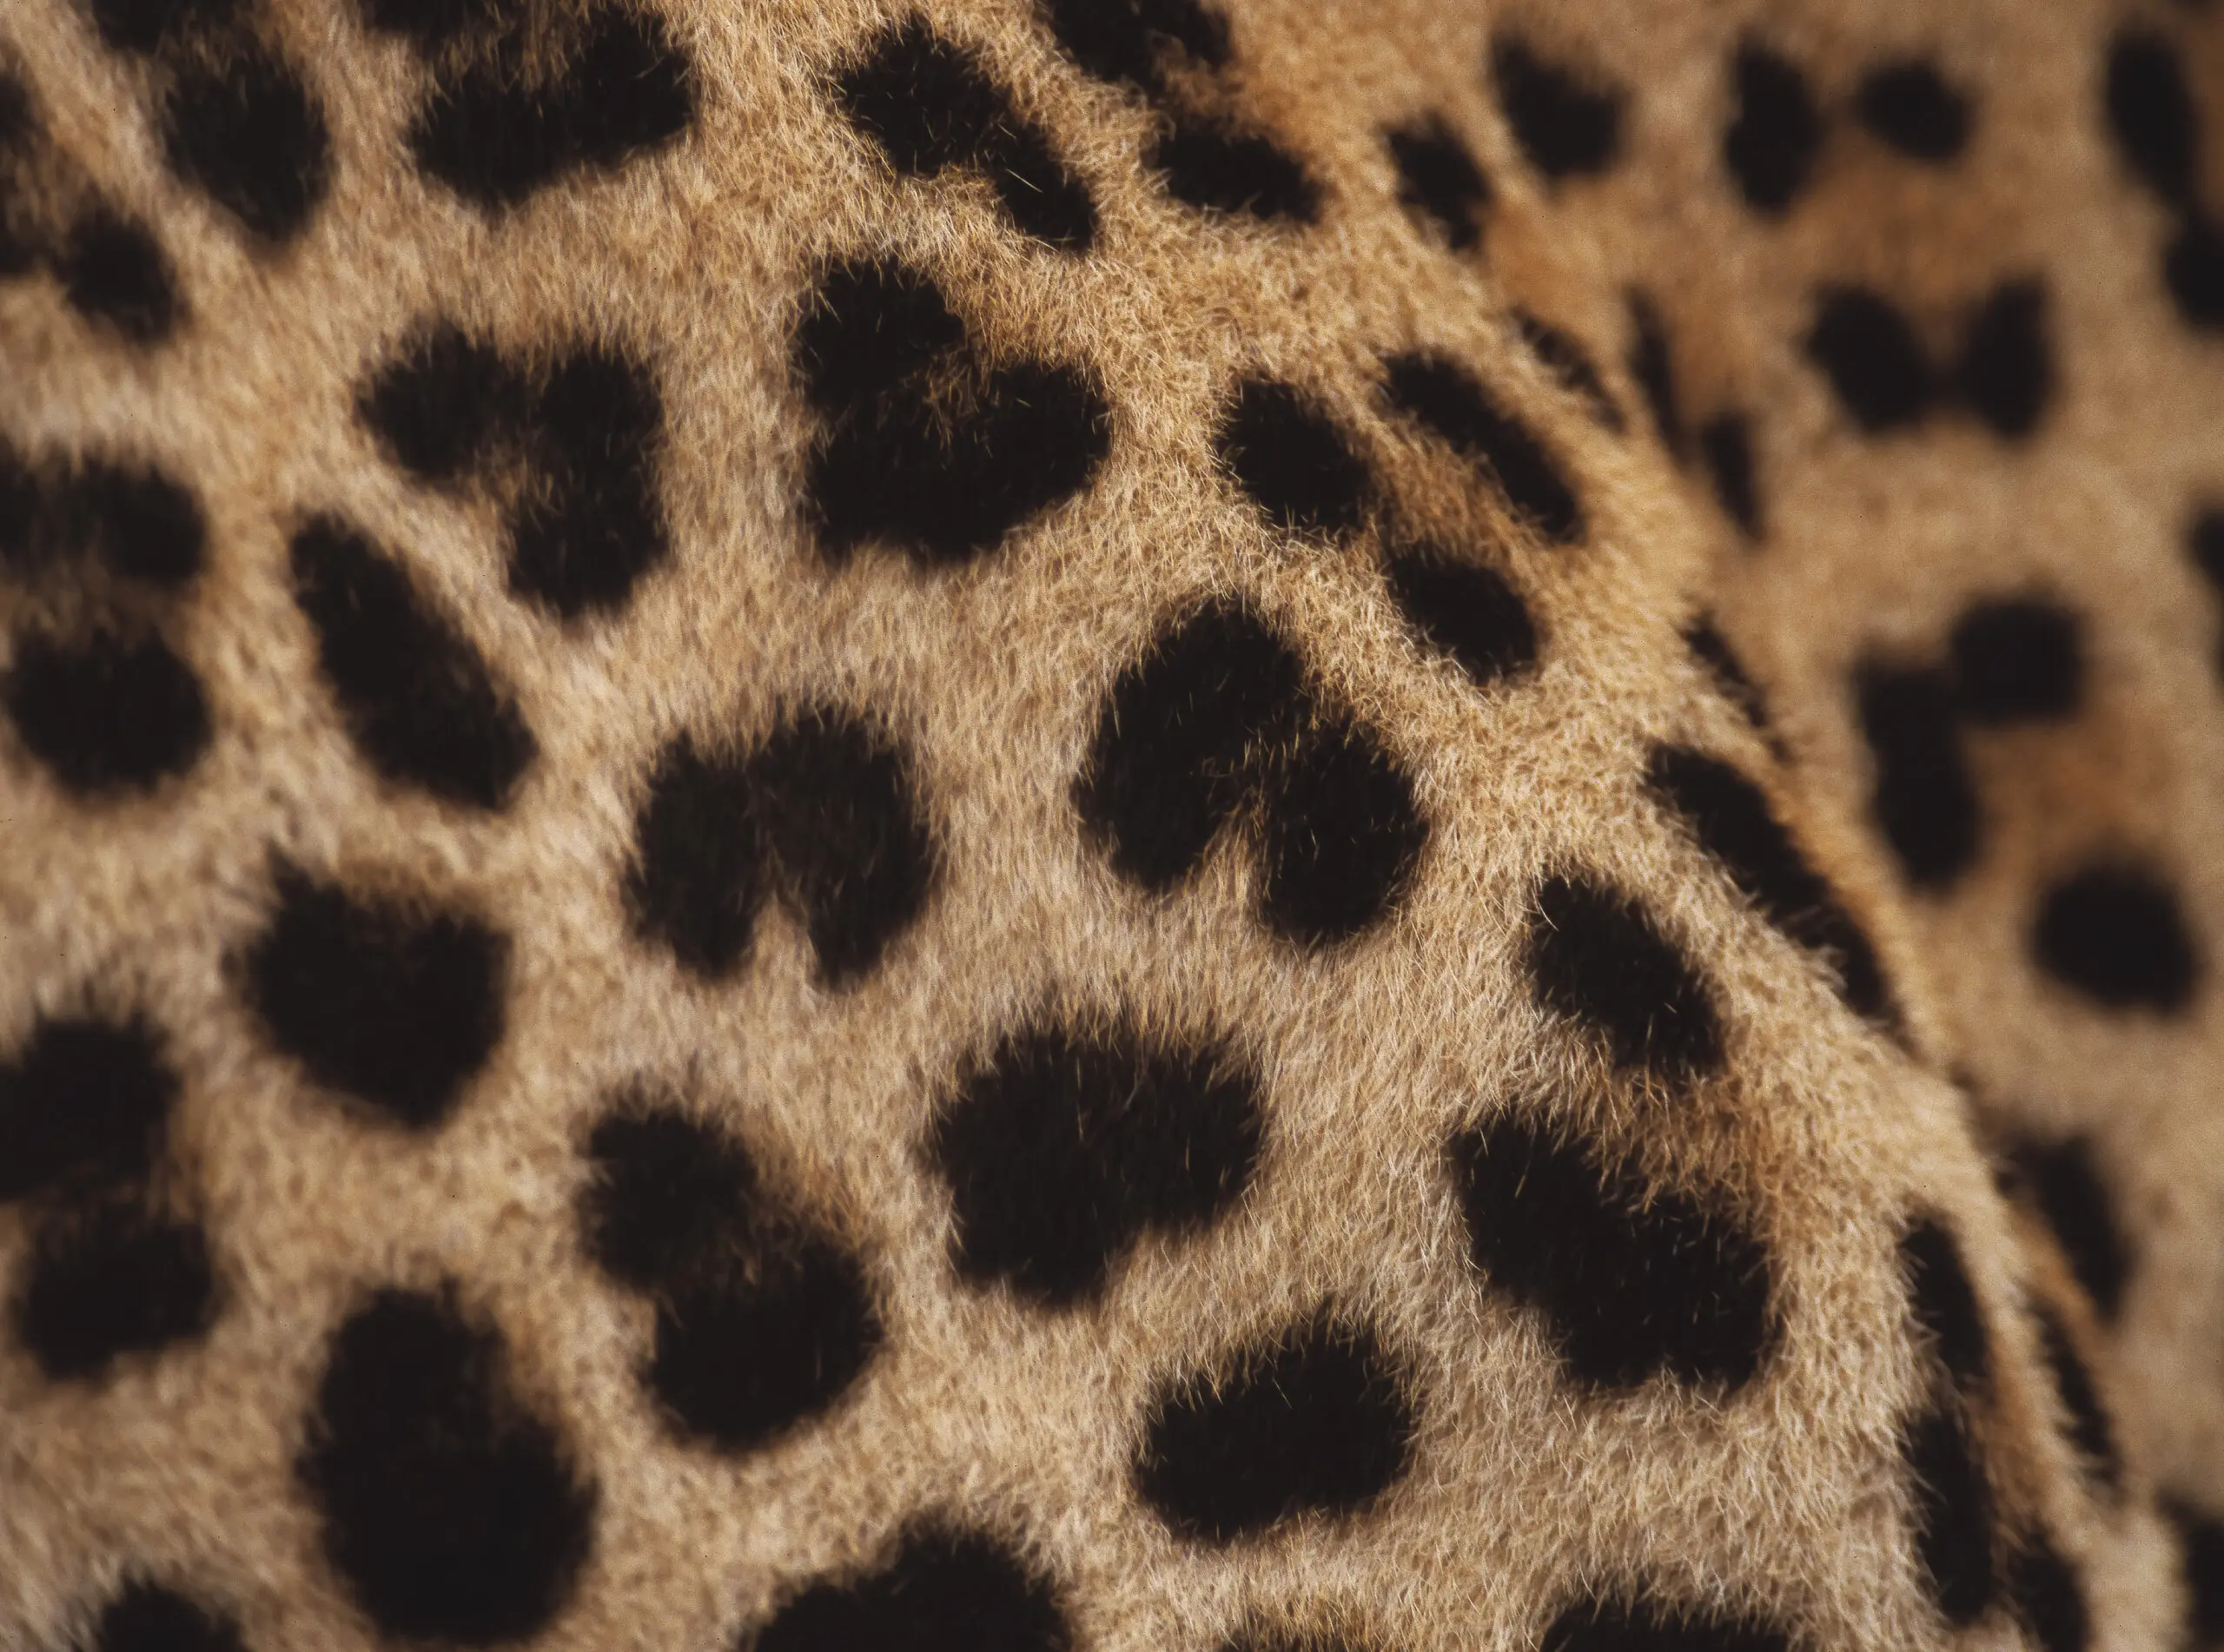 Wandbild (3244) Leopard präsentiert: Details und Strukturen,Tiere,Wildtiere,Aus Afrika,Tiere